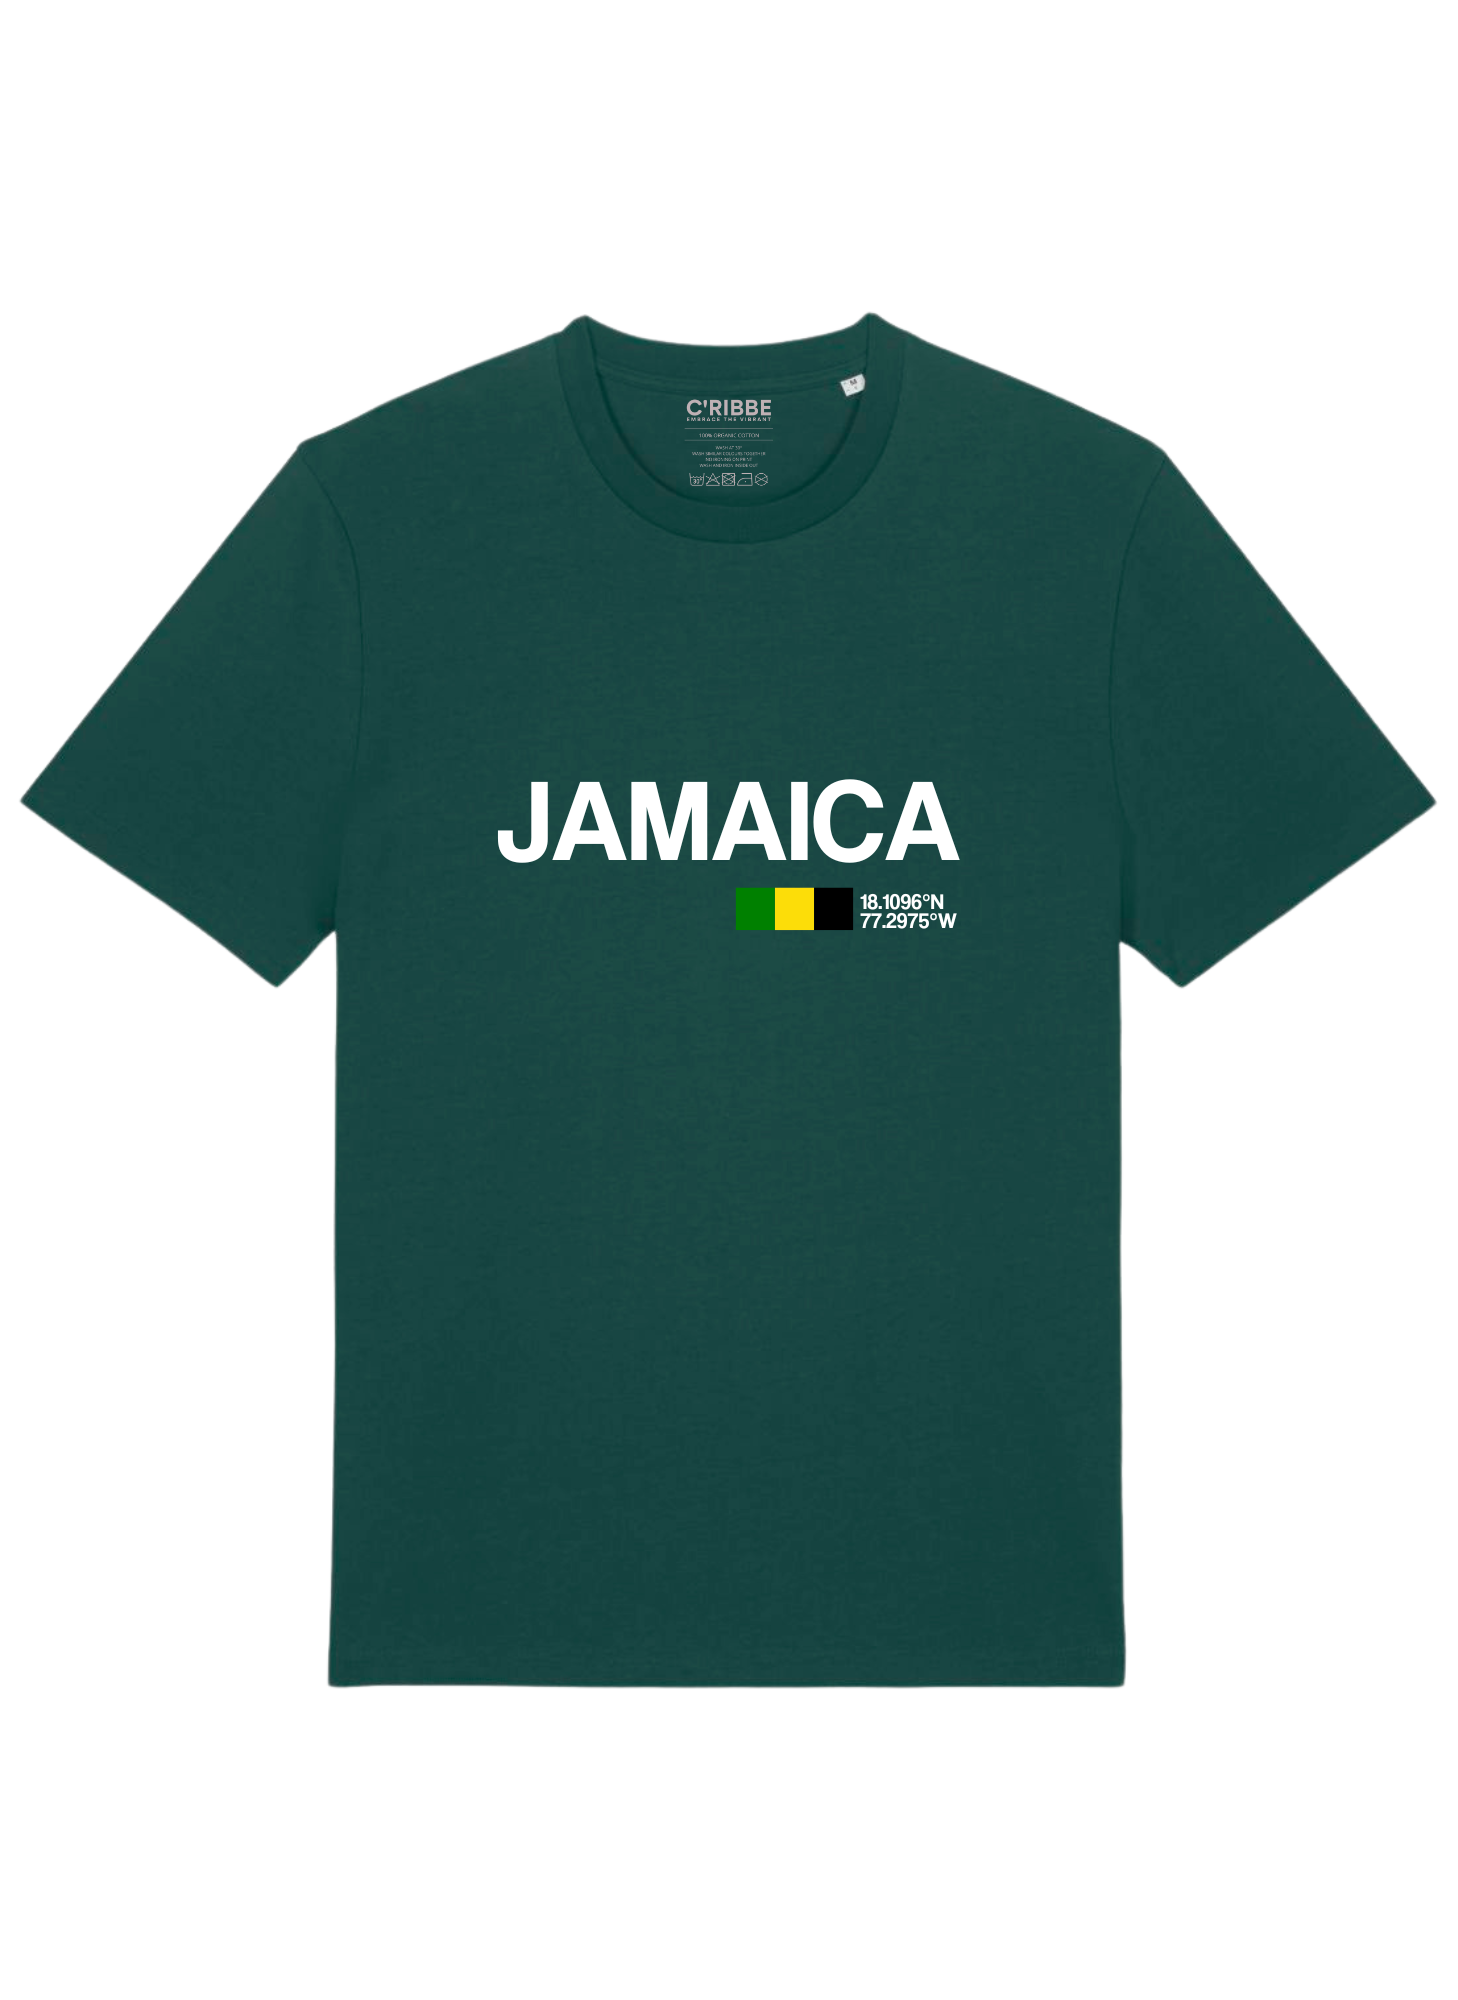 JAMAICA Unisex Crew Neck T-Shirt, Black